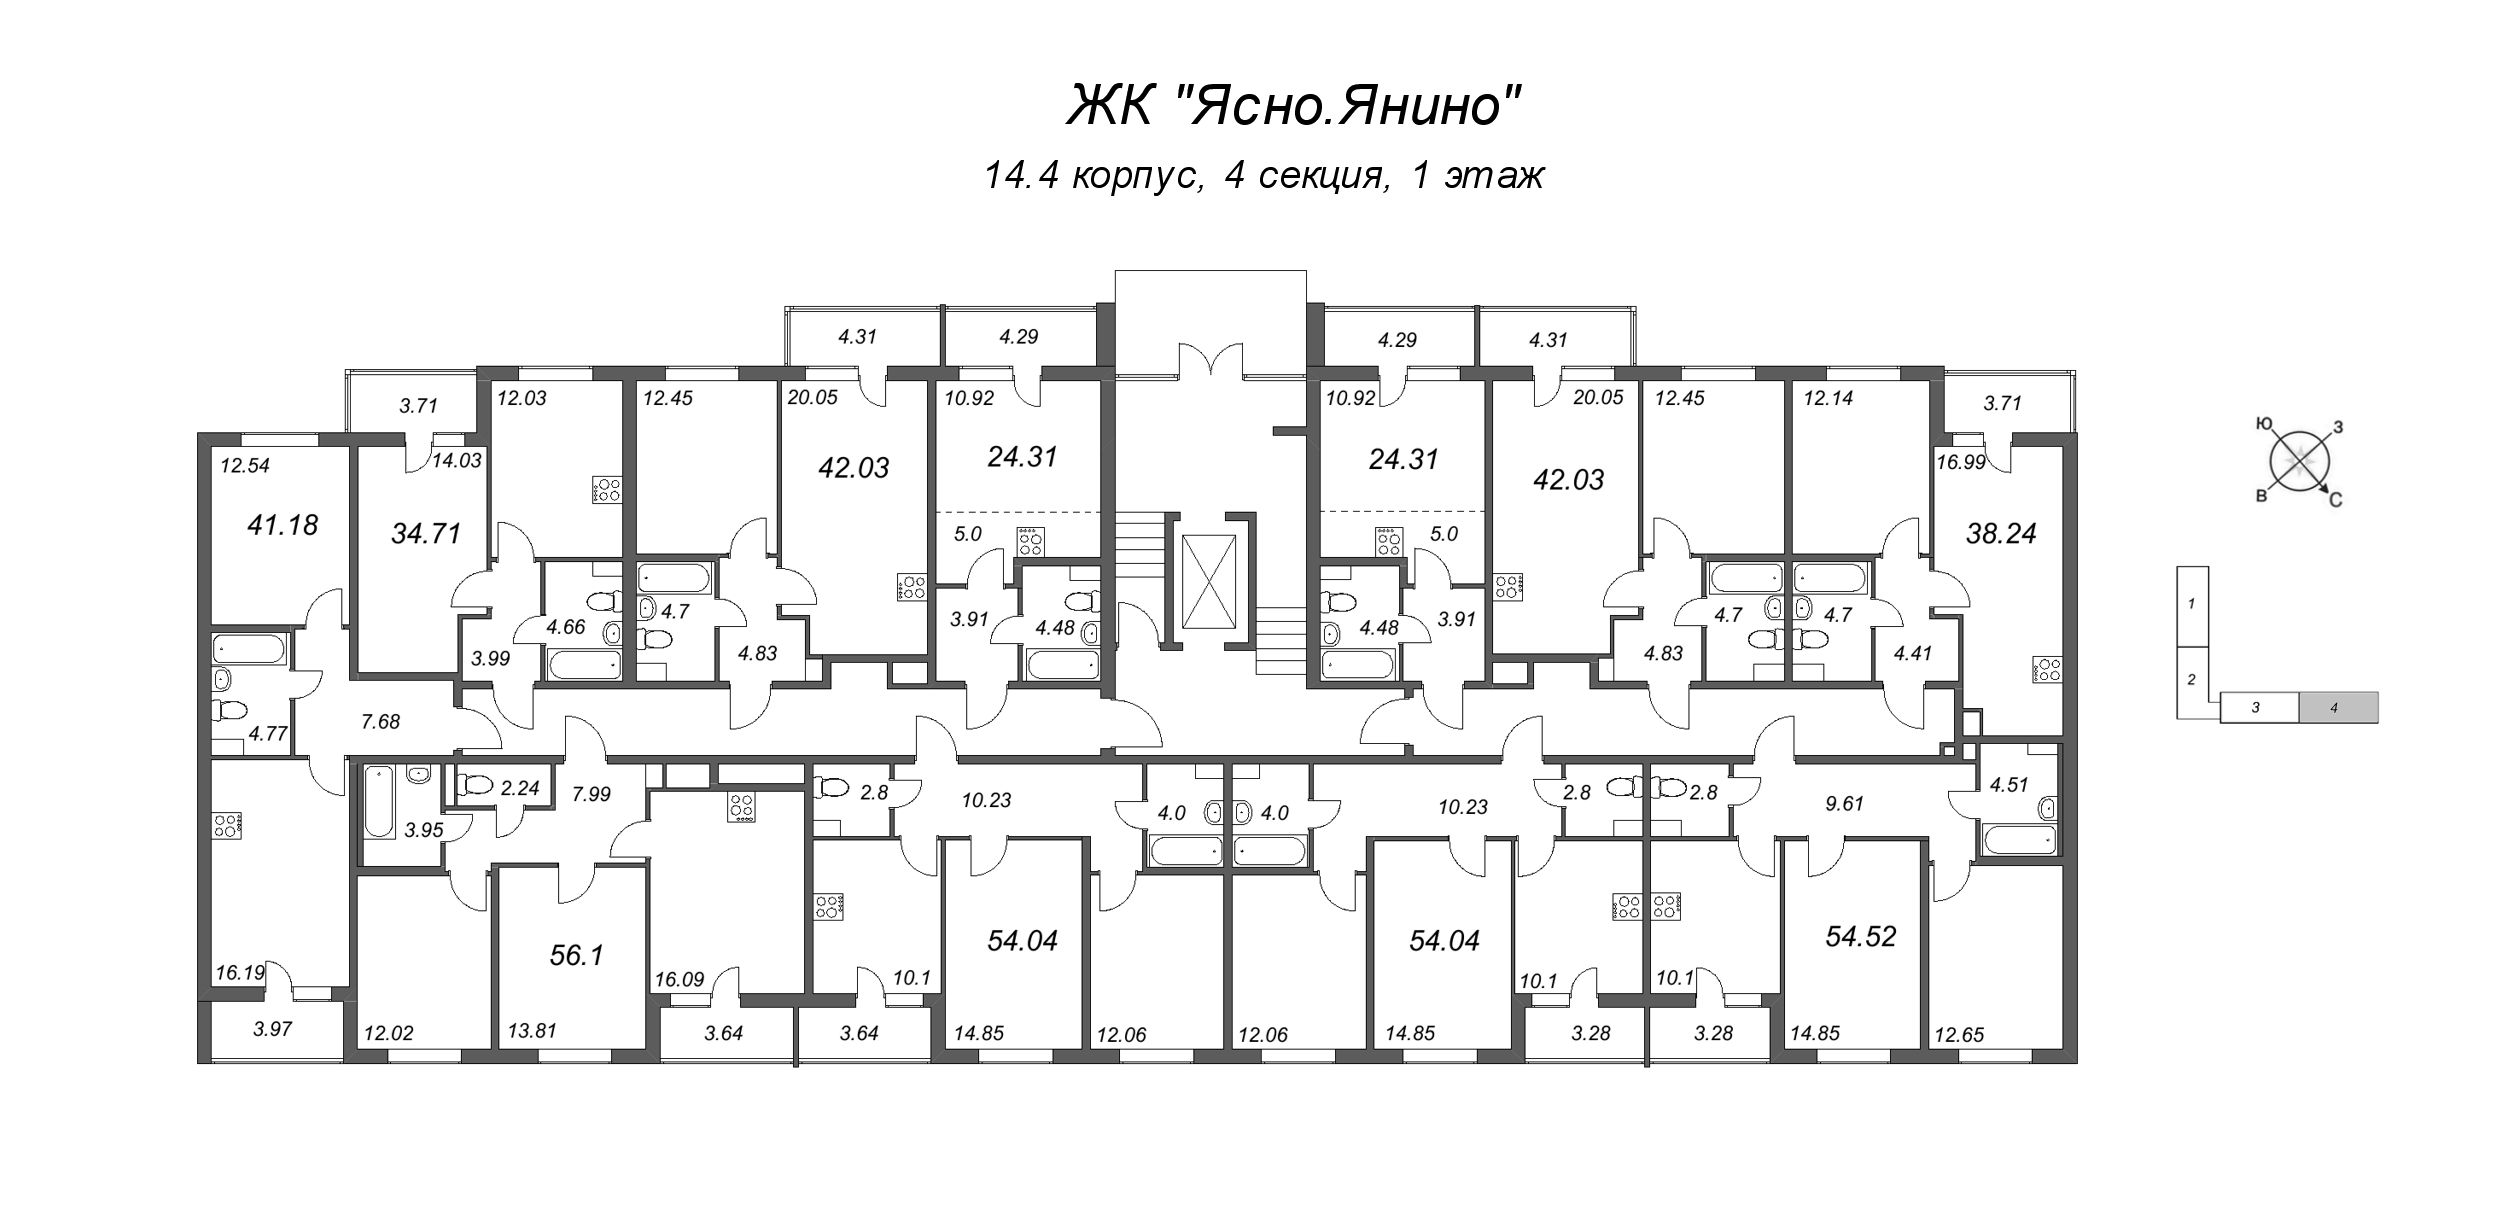 Квартира-студия, 24.31 м² в ЖК "Ясно.Янино" - планировка этажа